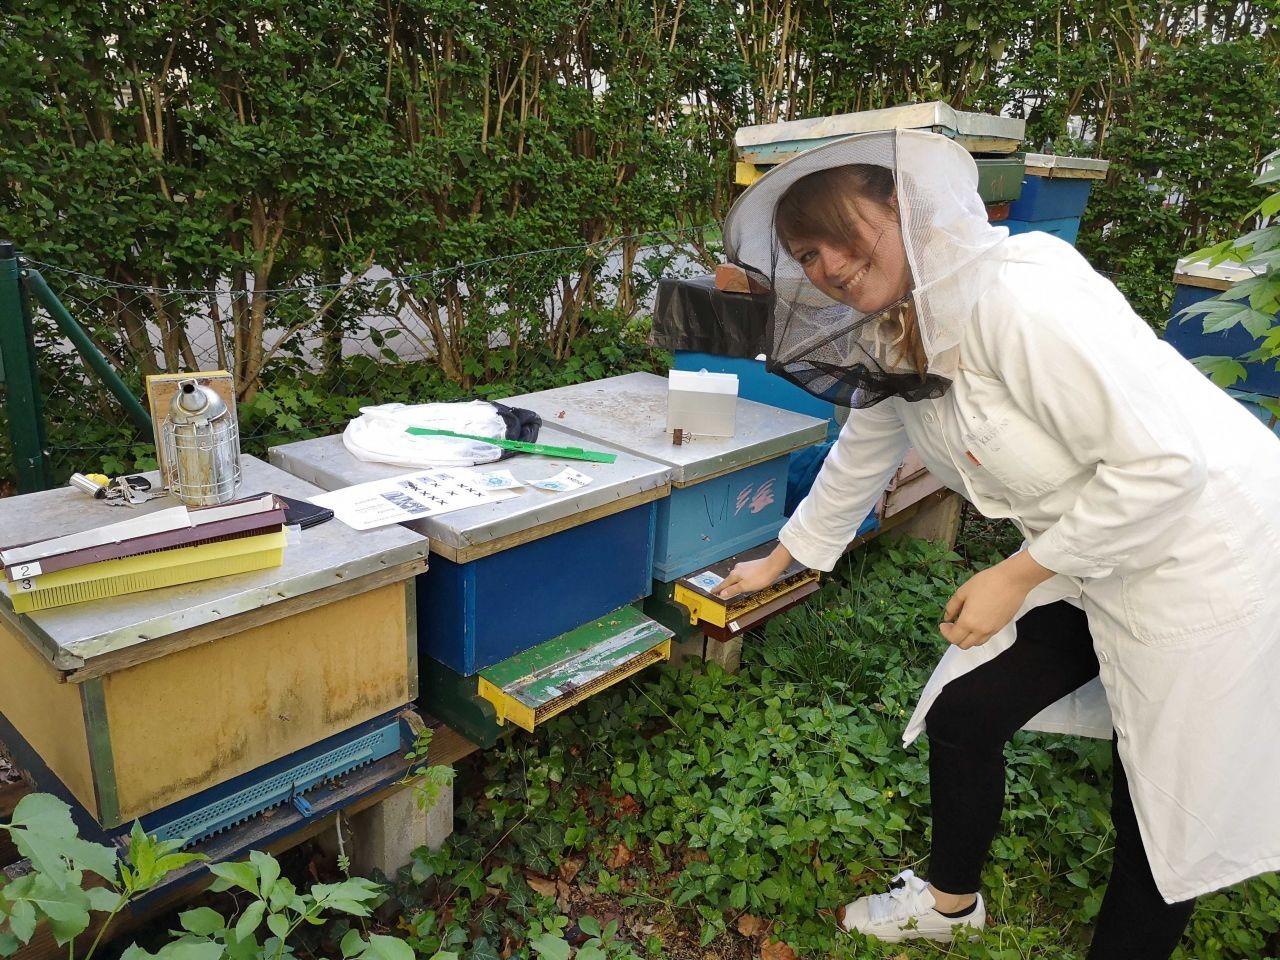 Beprobung von Bienenvölkern um die Umwelt zu erforschen